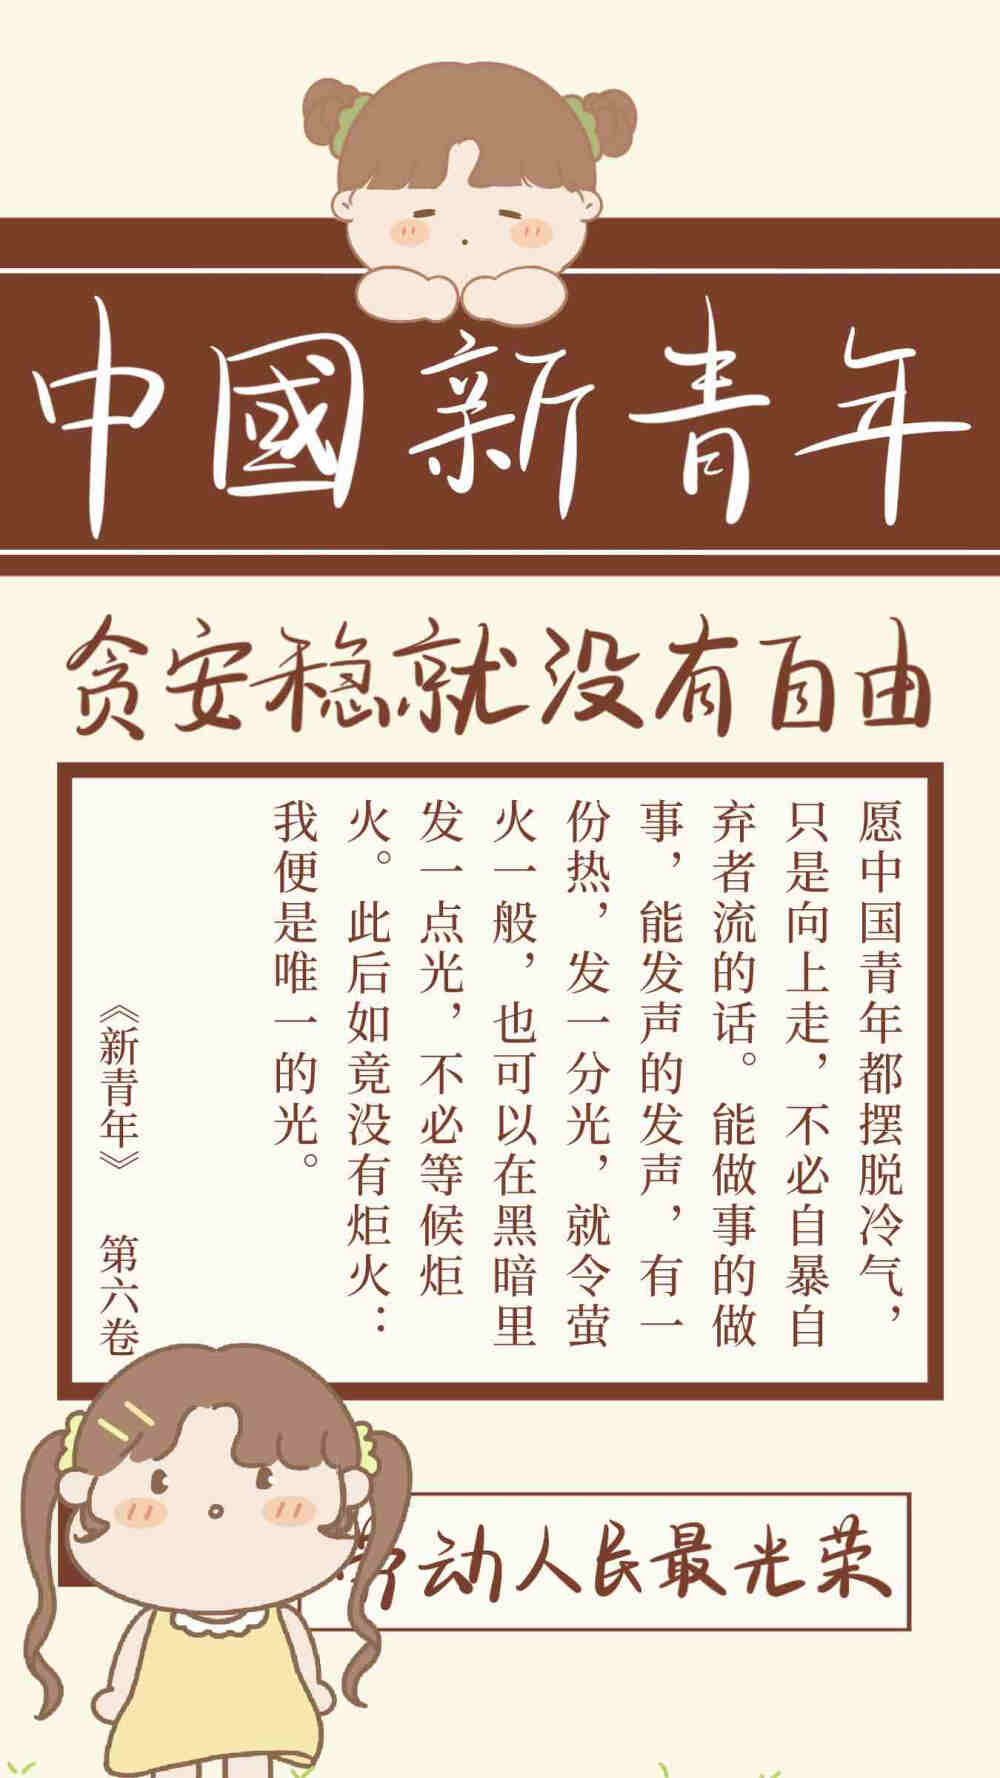 中国新青年 - 堆糖,美图壁纸兴趣社区